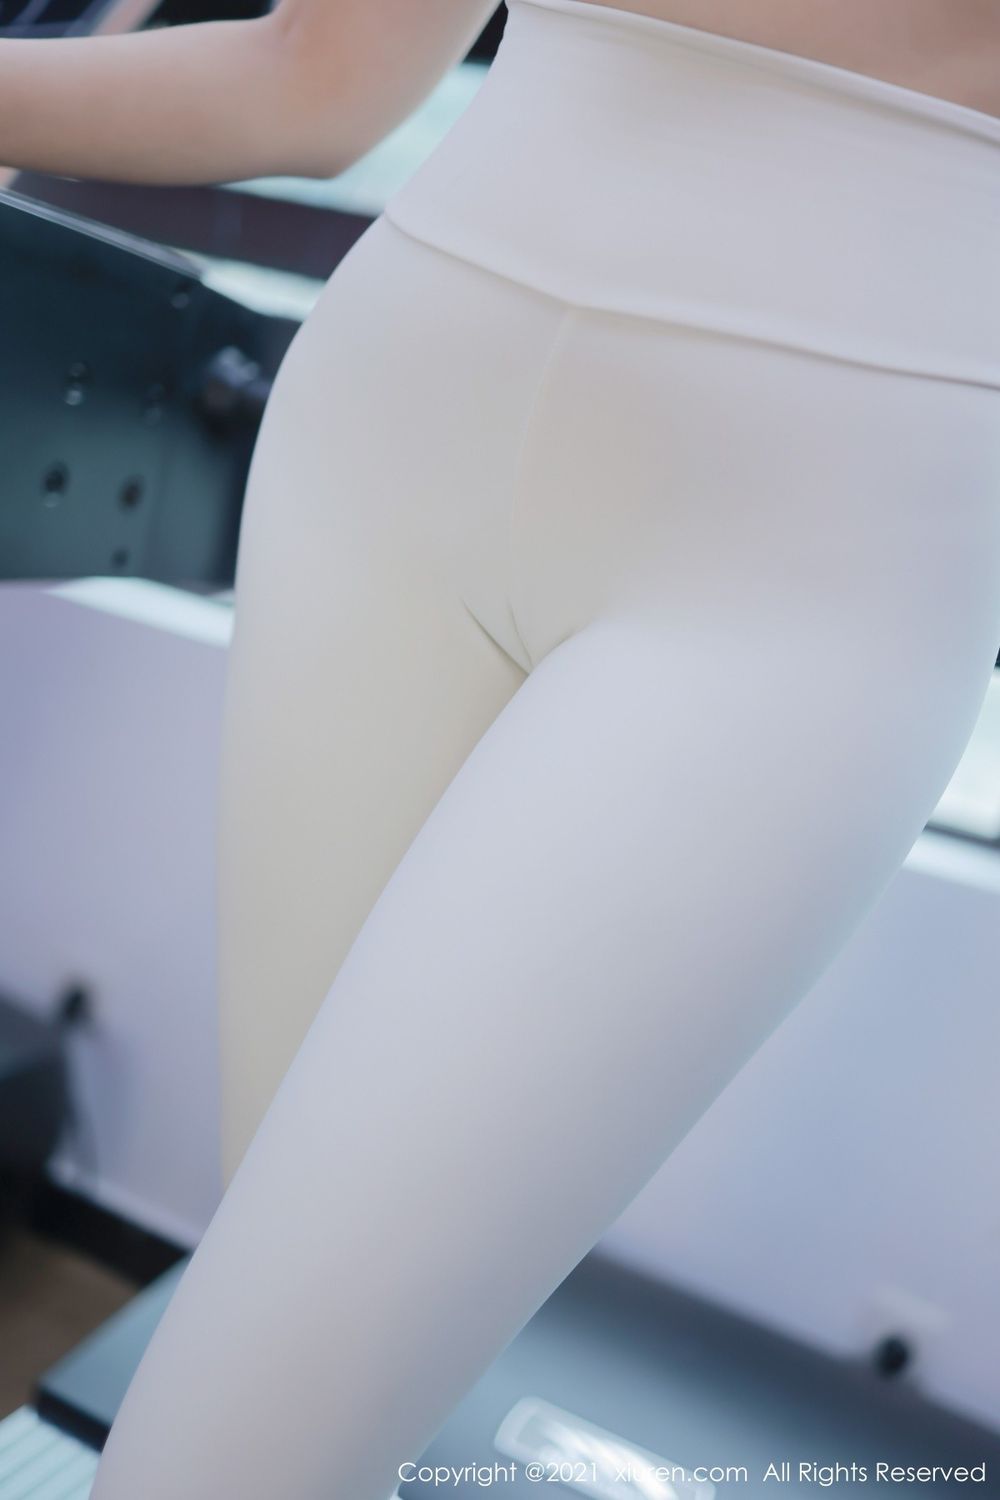 新人模特韩希蕾健身房紧身裤运动内衣服饰性感写真